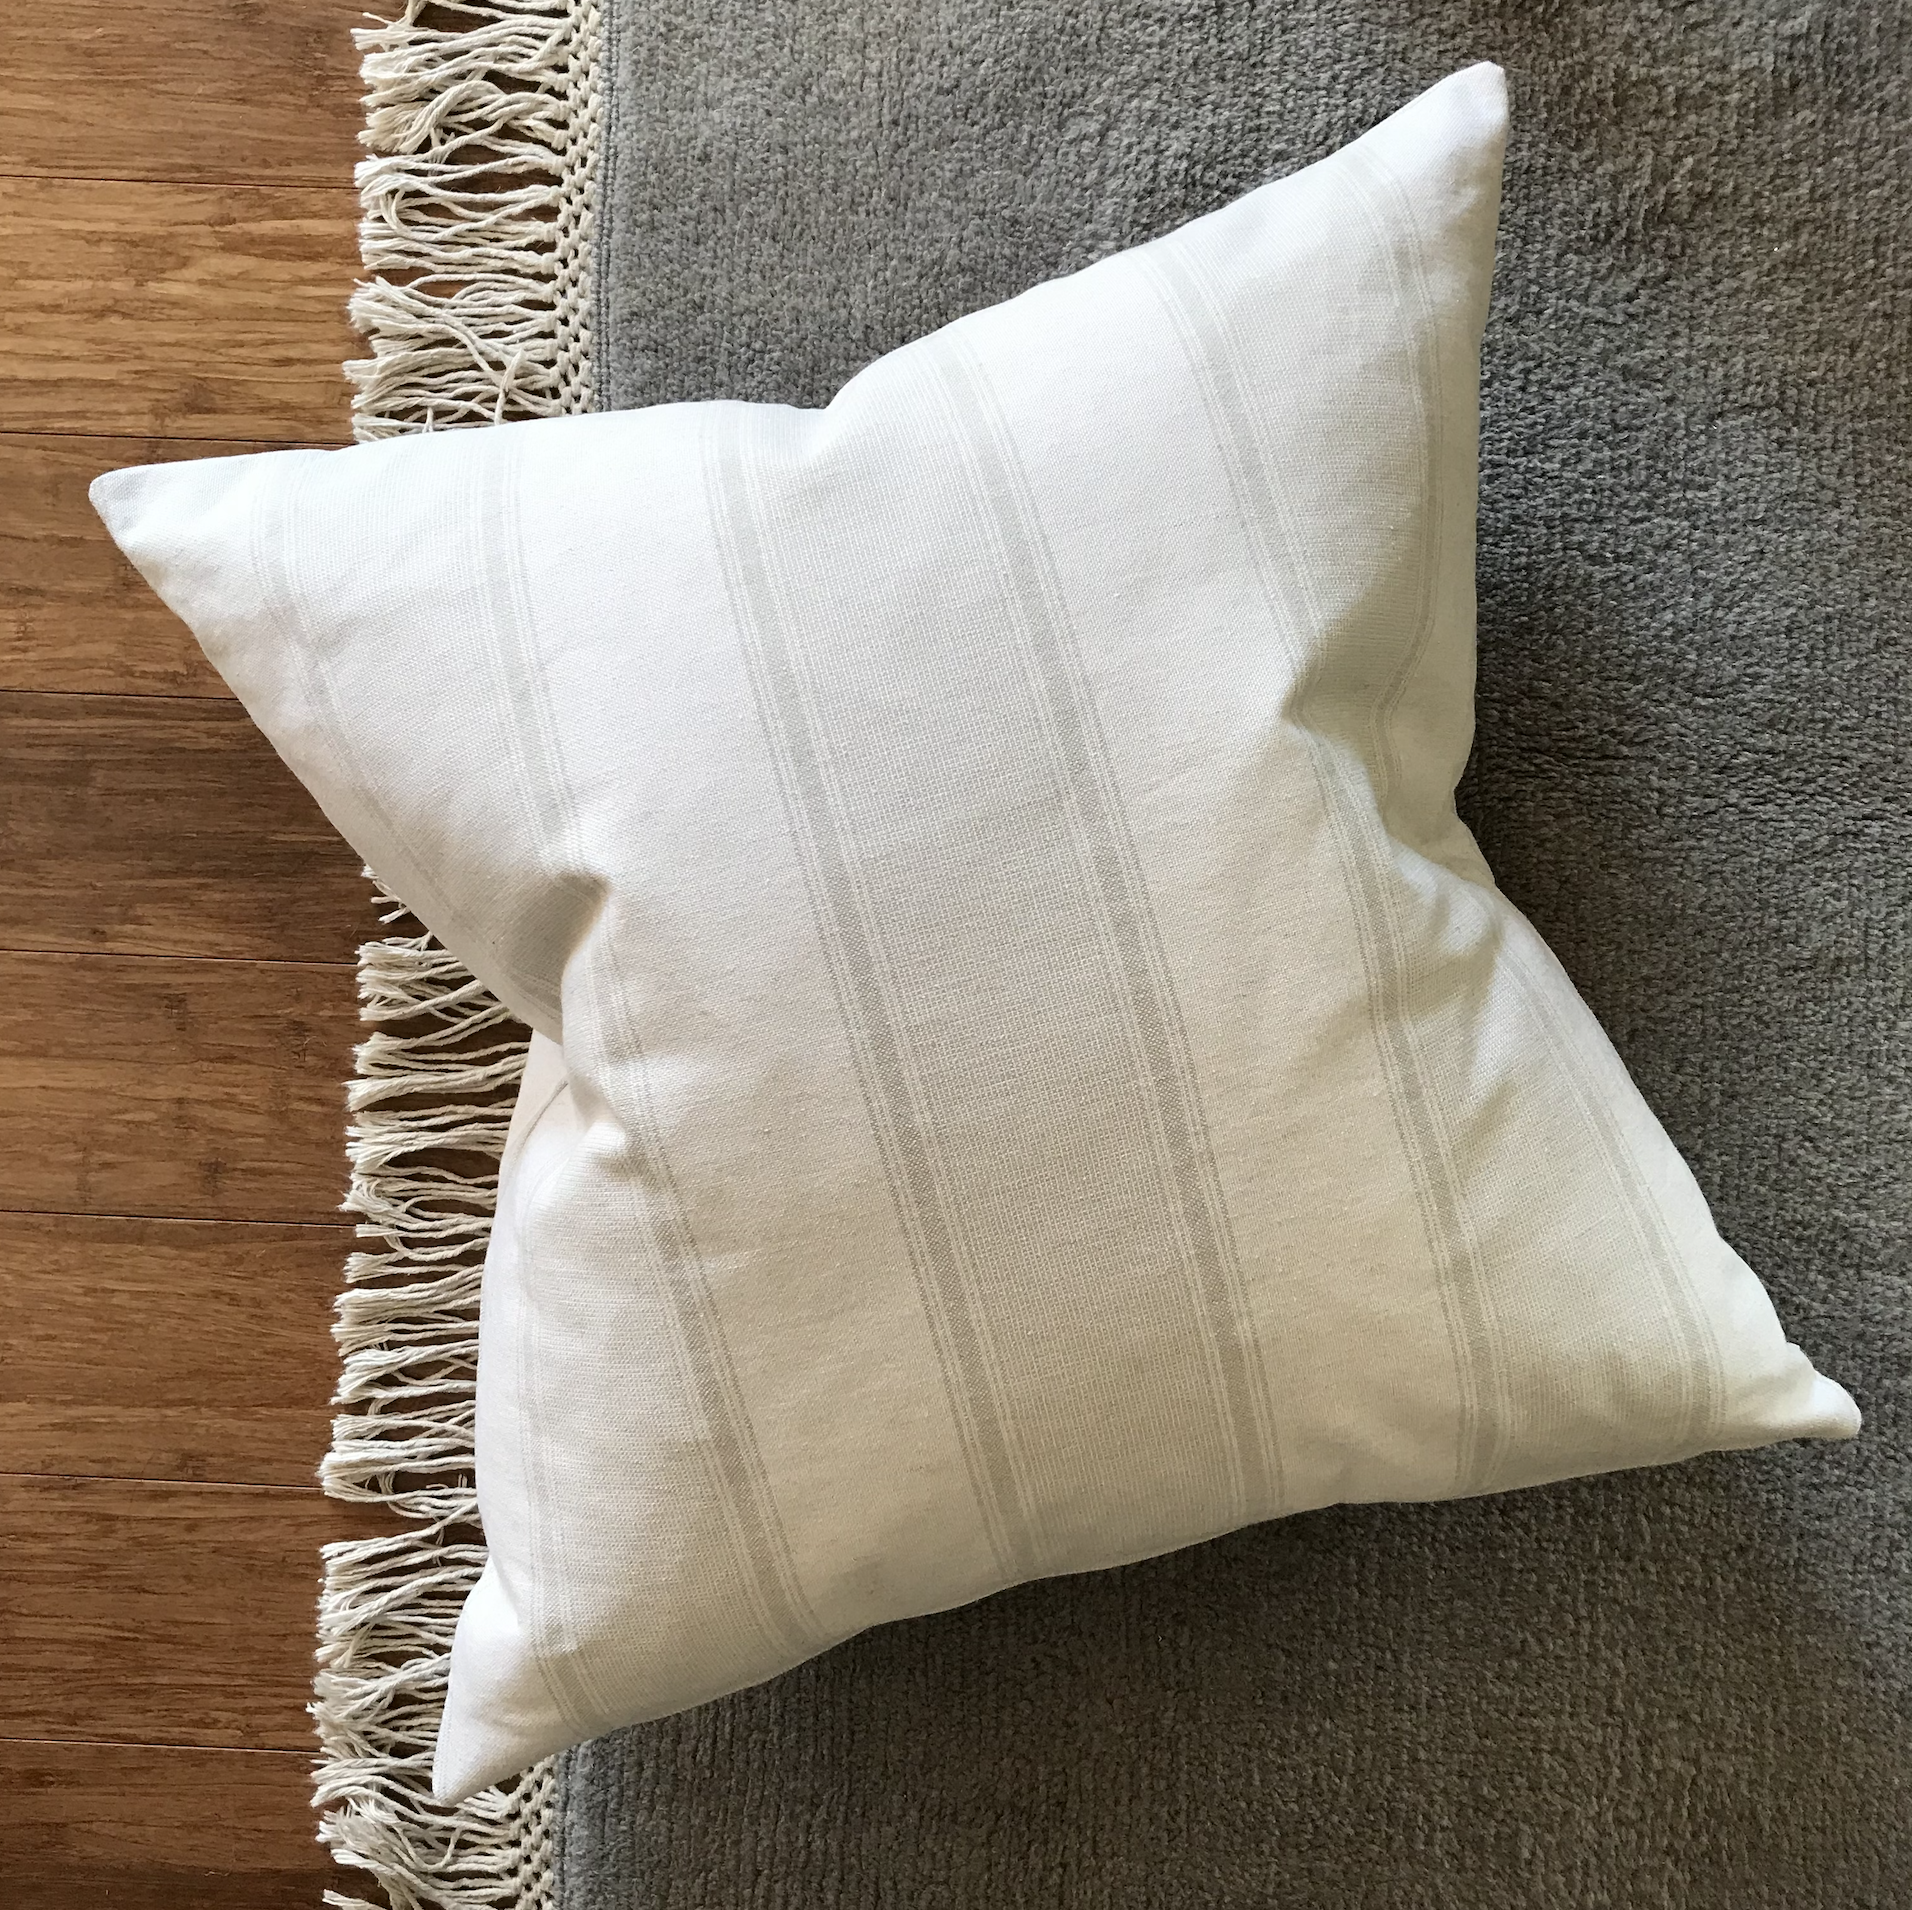 White Textured Throw Pillow, Striped Pillow Cover, Farmhouse